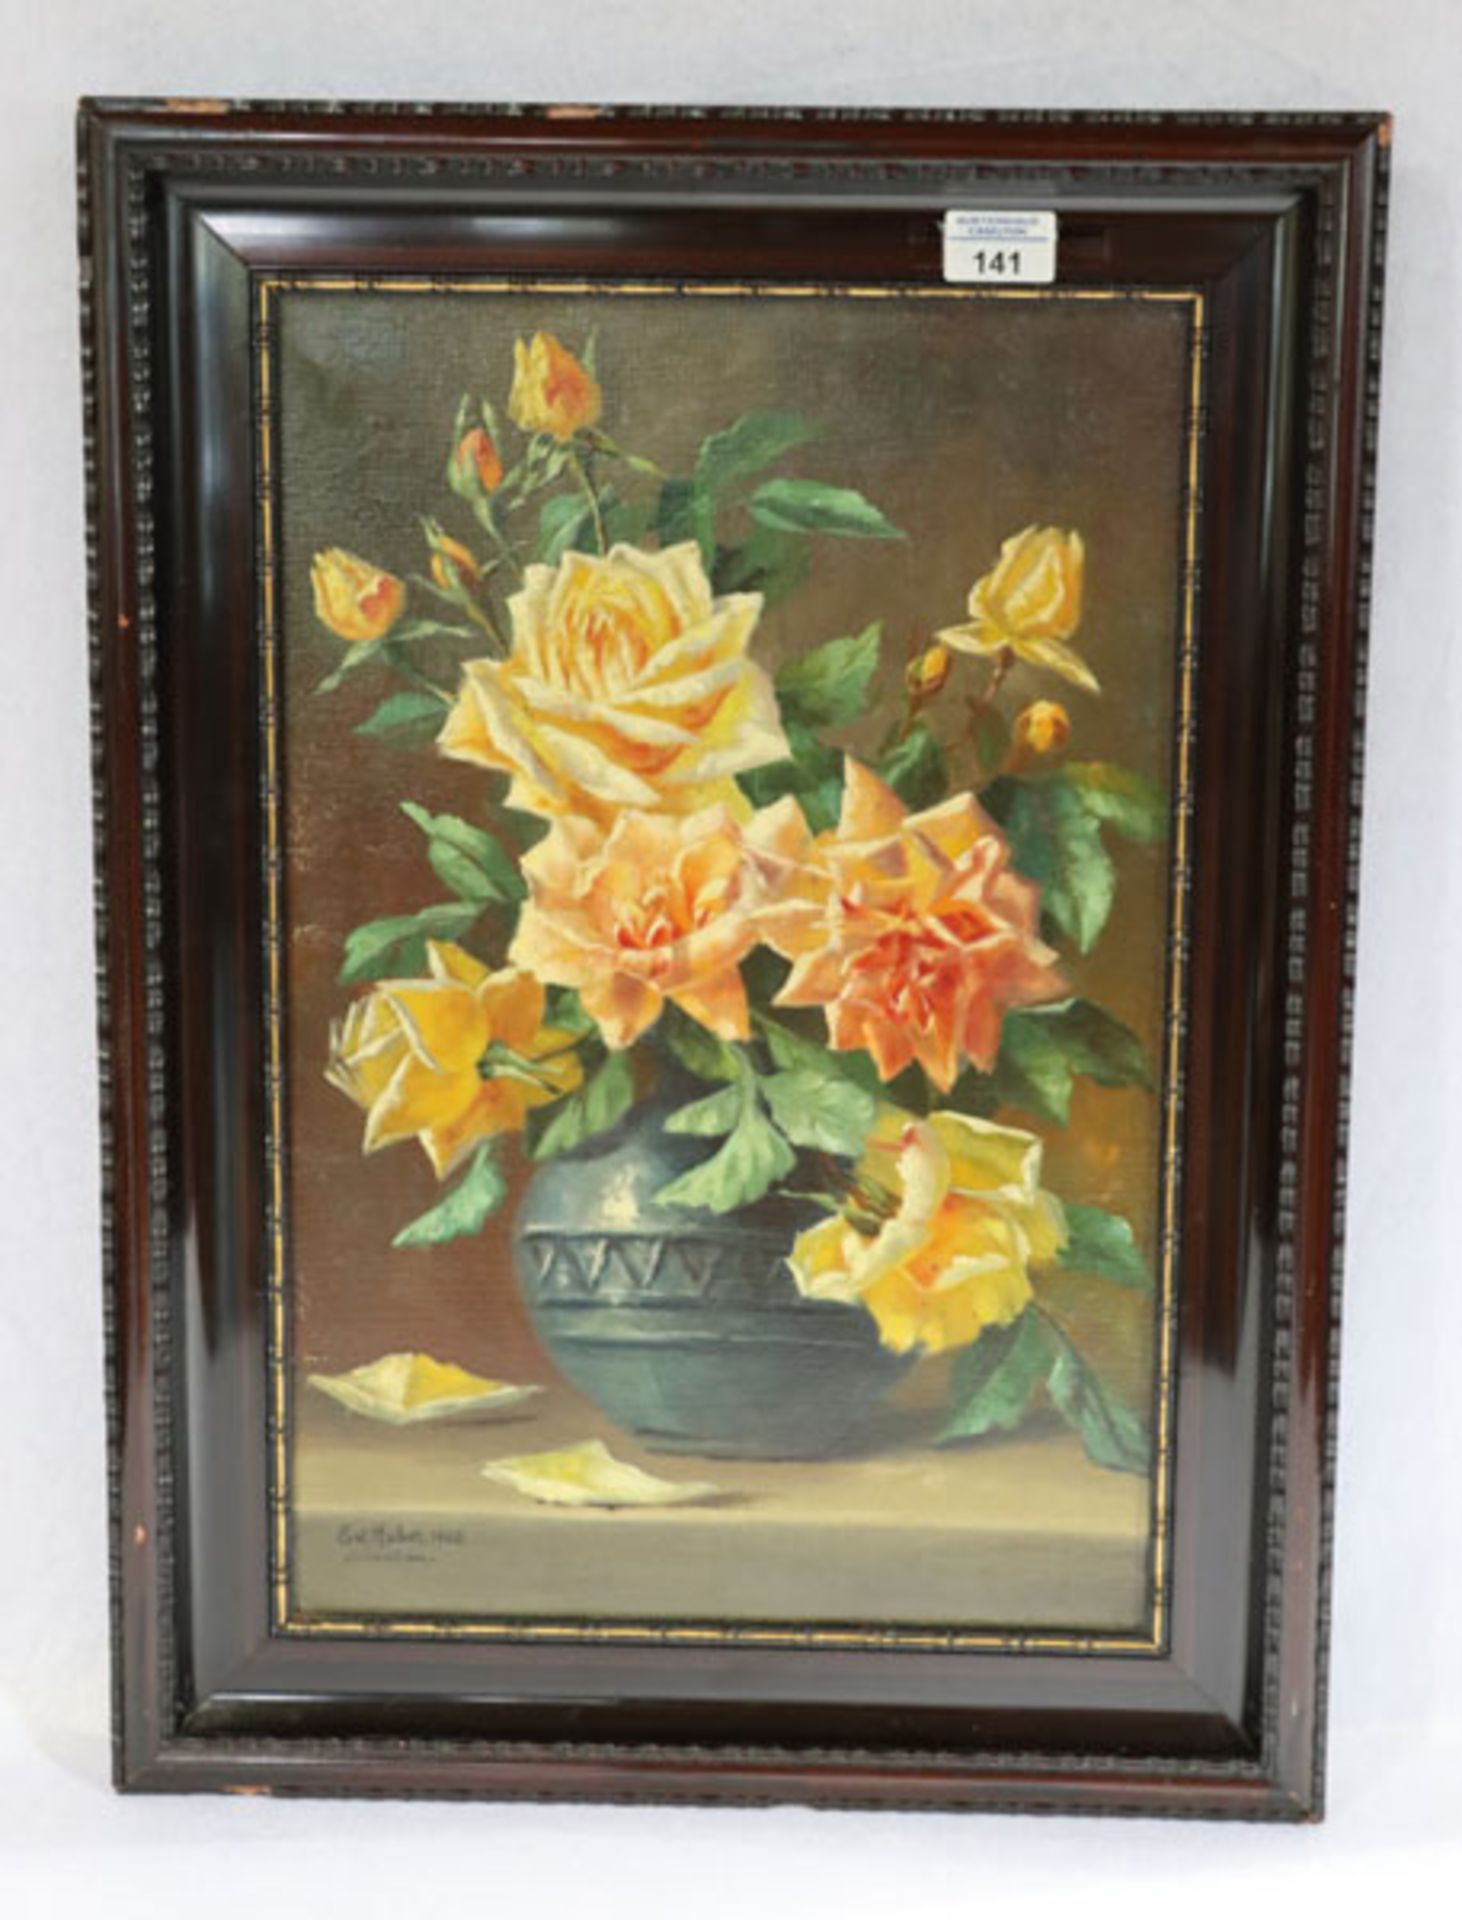 Gemälde ÖL/LW 'Rosenstillleben in Vase', signiert Ed. Huber 1908, München, gerahmt, Rahmen